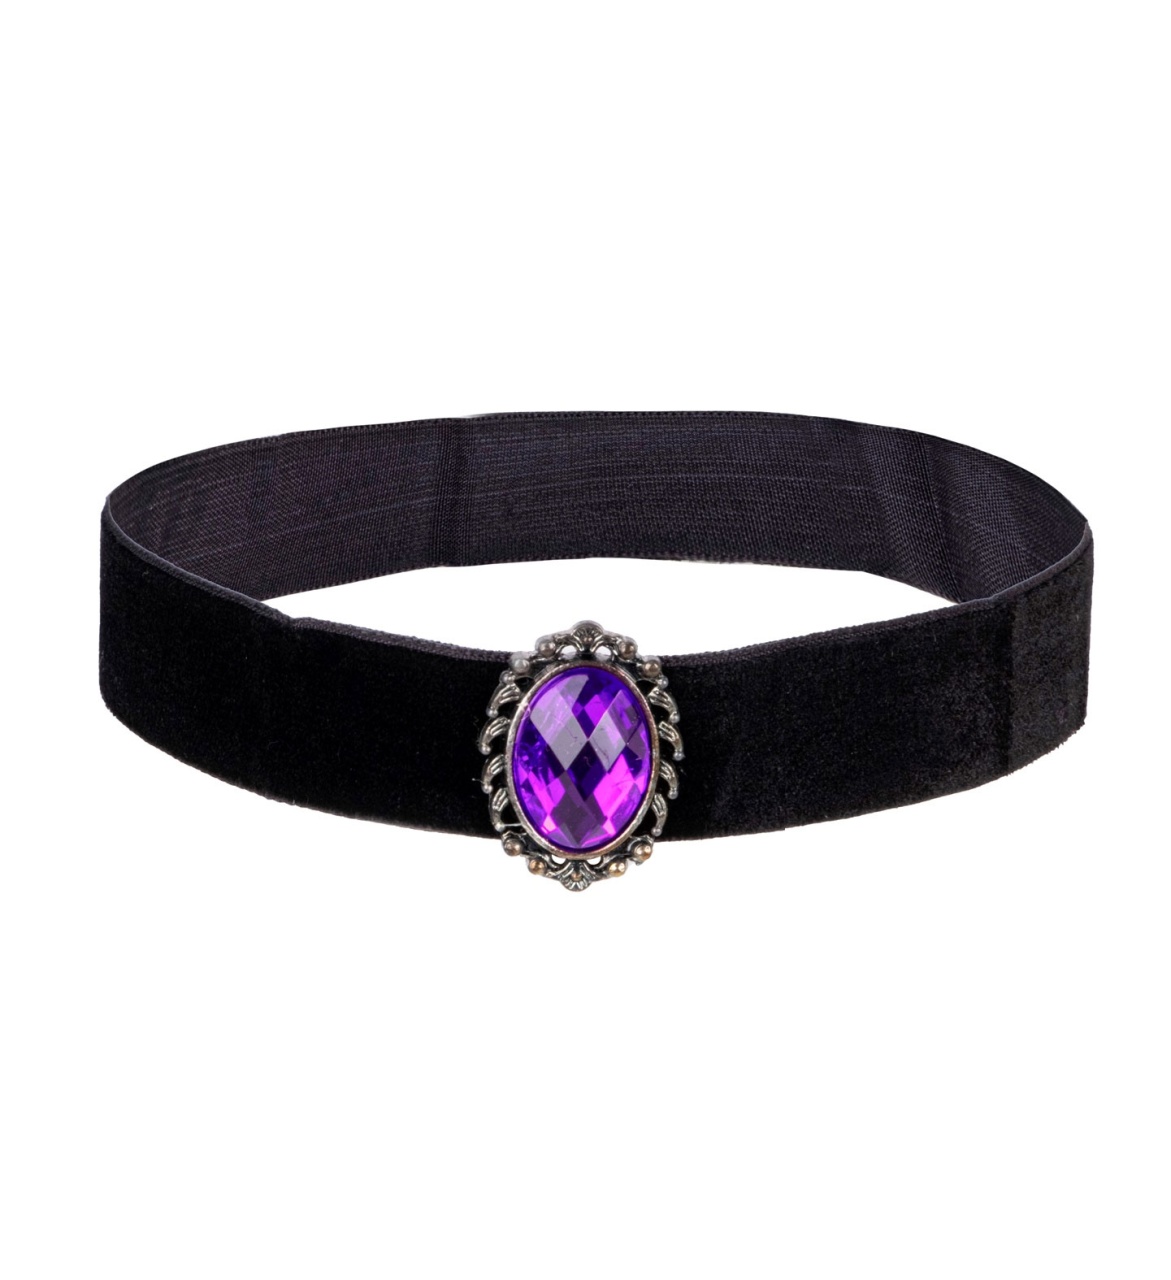 Kostüm Zubehör Halsband Samt schwarz mit violettem Juwel